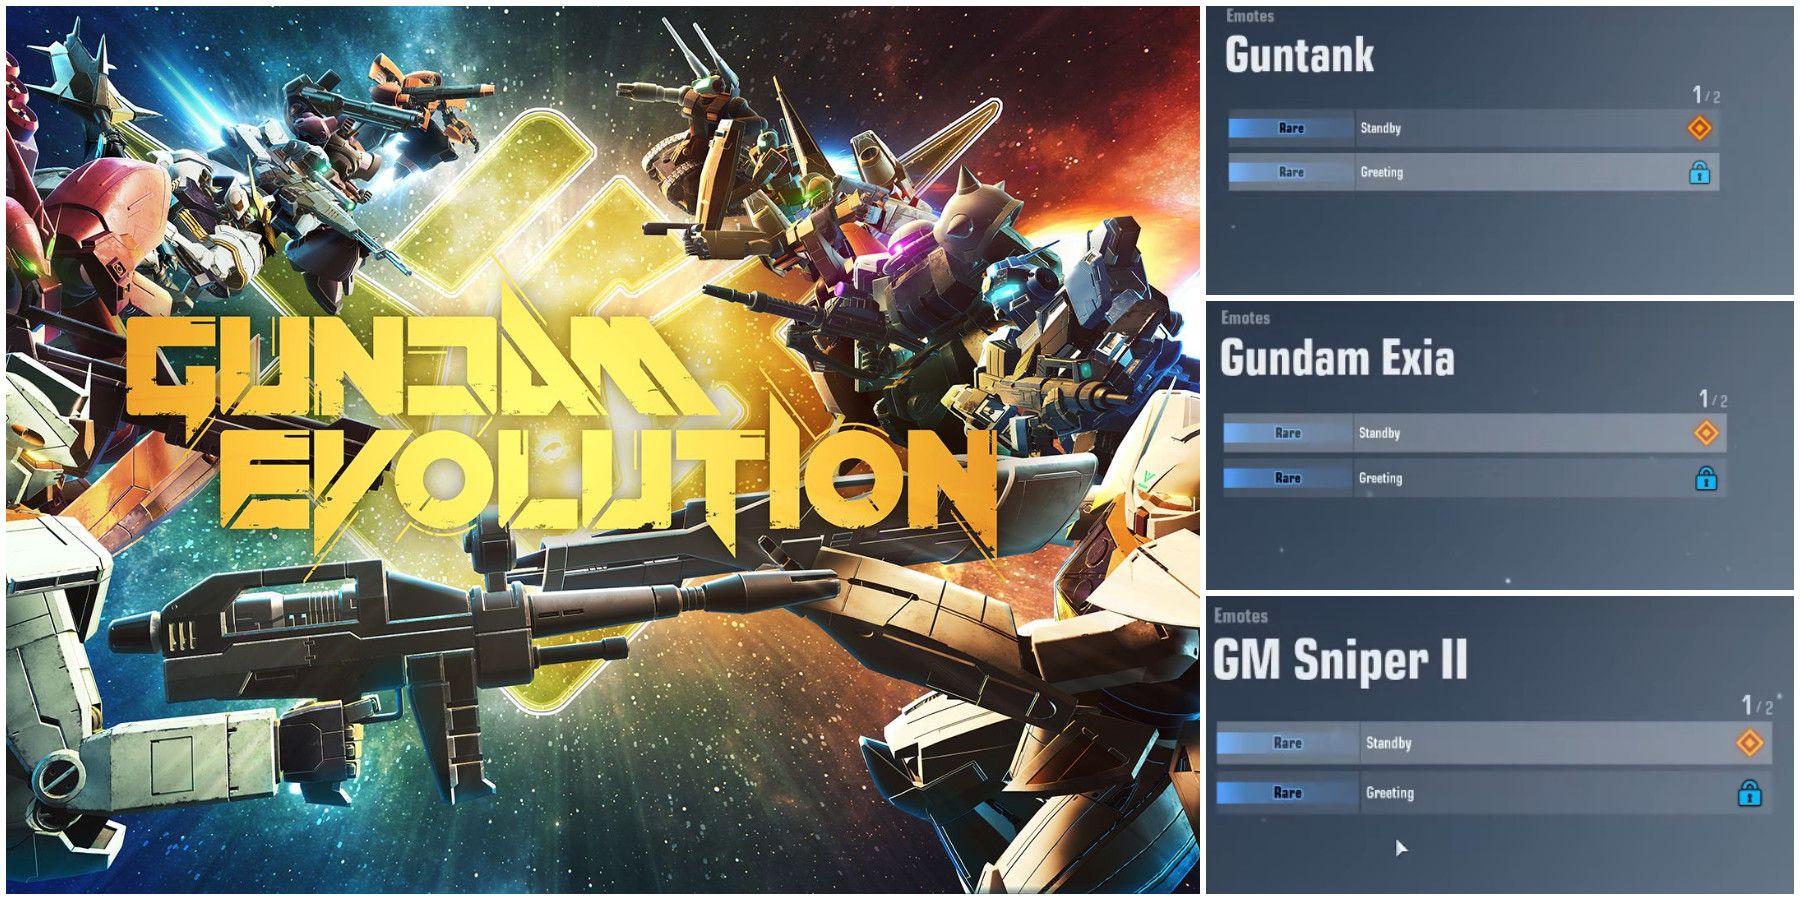 Gundam Evolution Emotes Guide